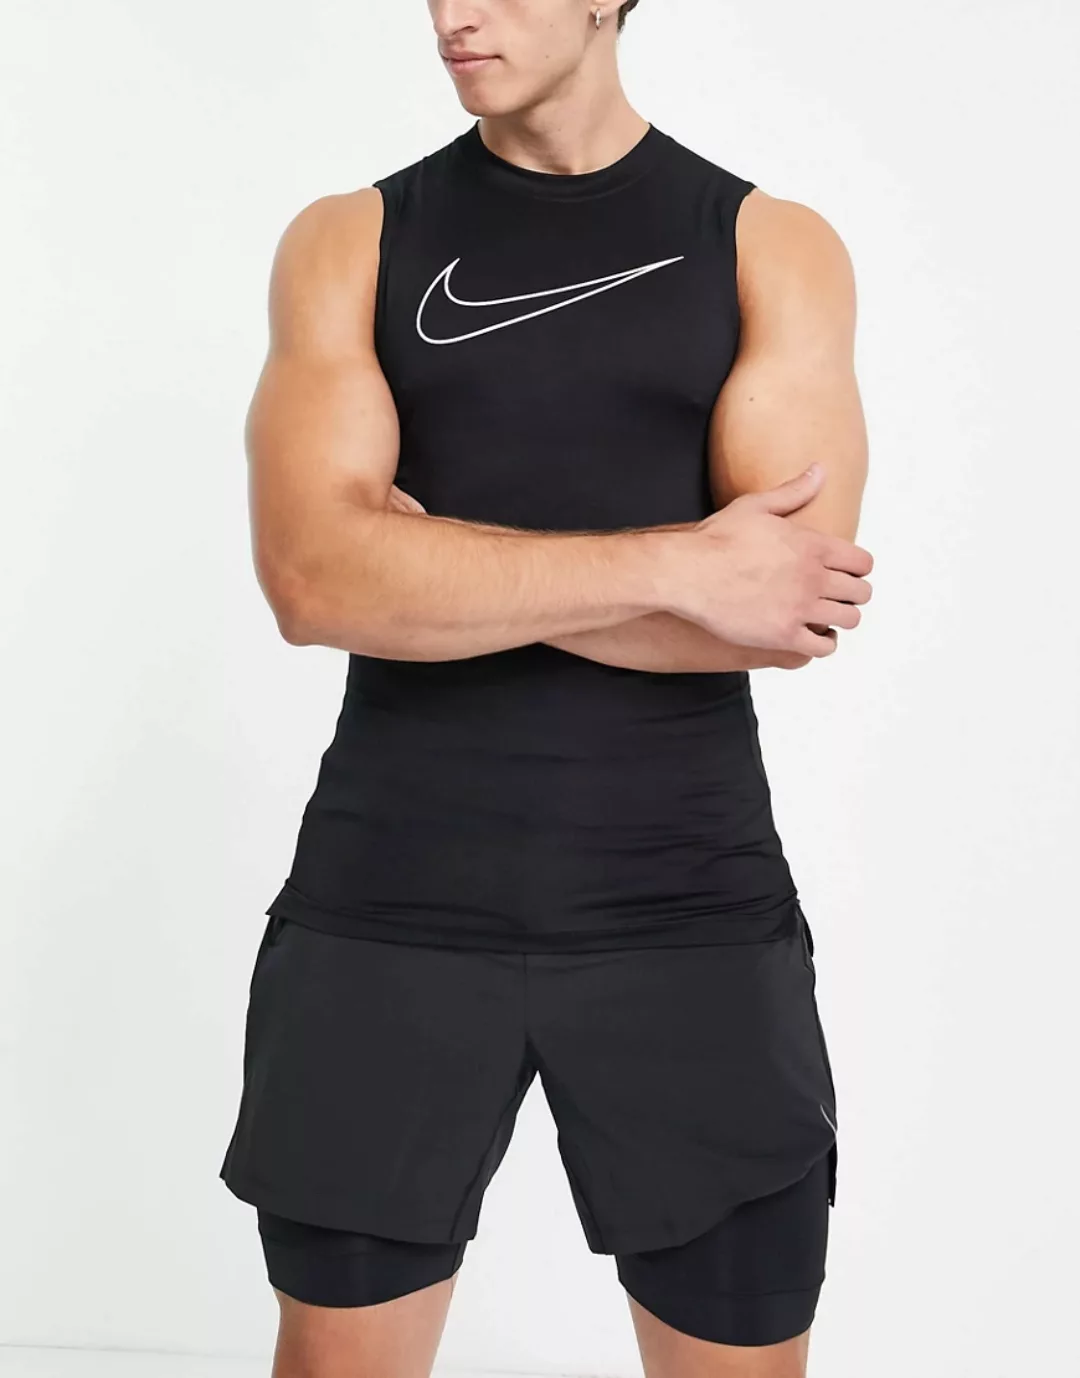 Nike – Pro Training – Trägershirt in Schwarz und schmaler Passform günstig online kaufen